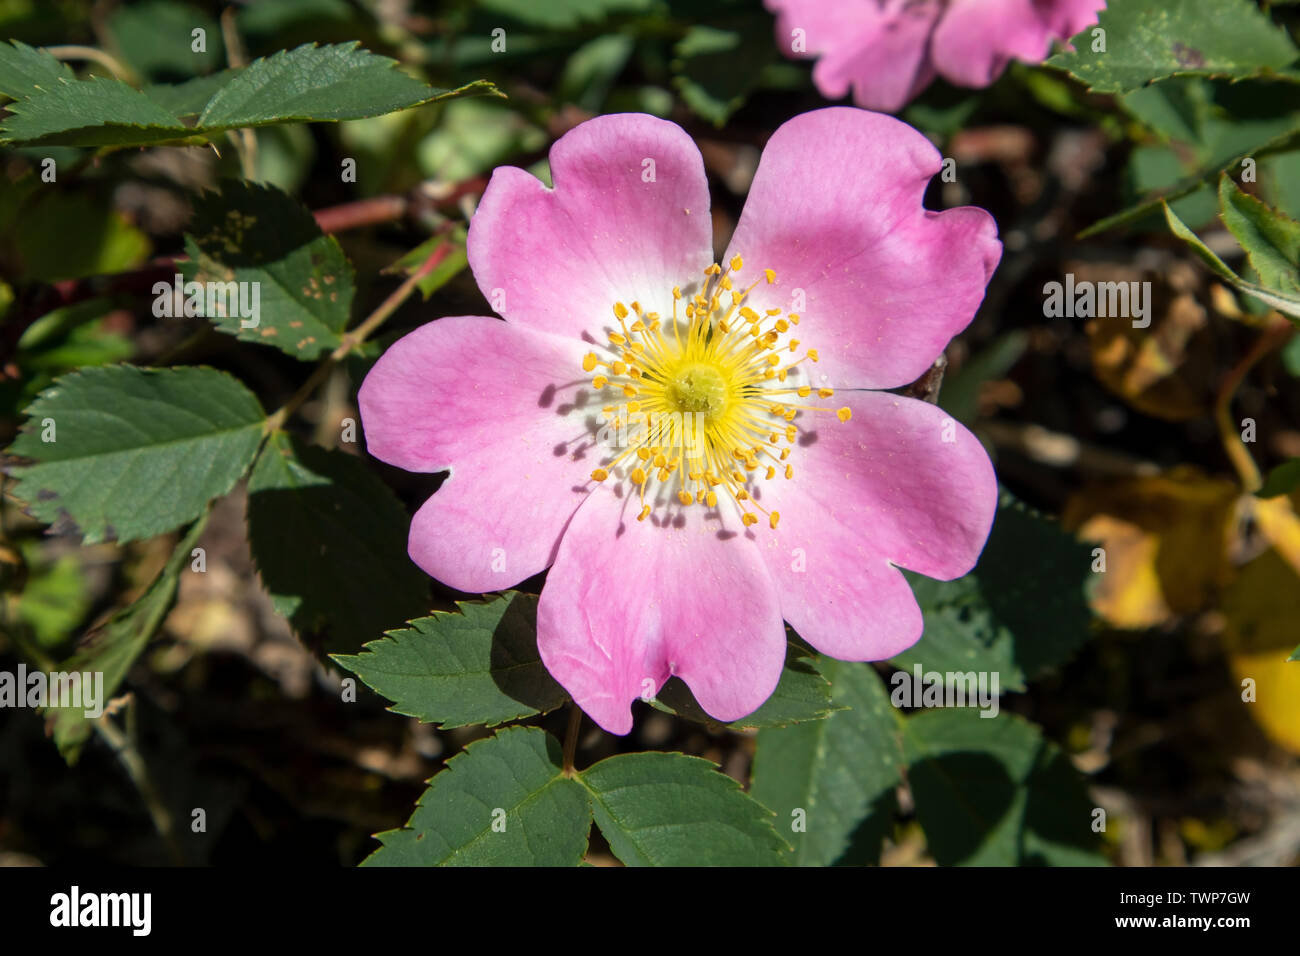 Rosa dumalis, glaucous dog rose flowers Stock Photo